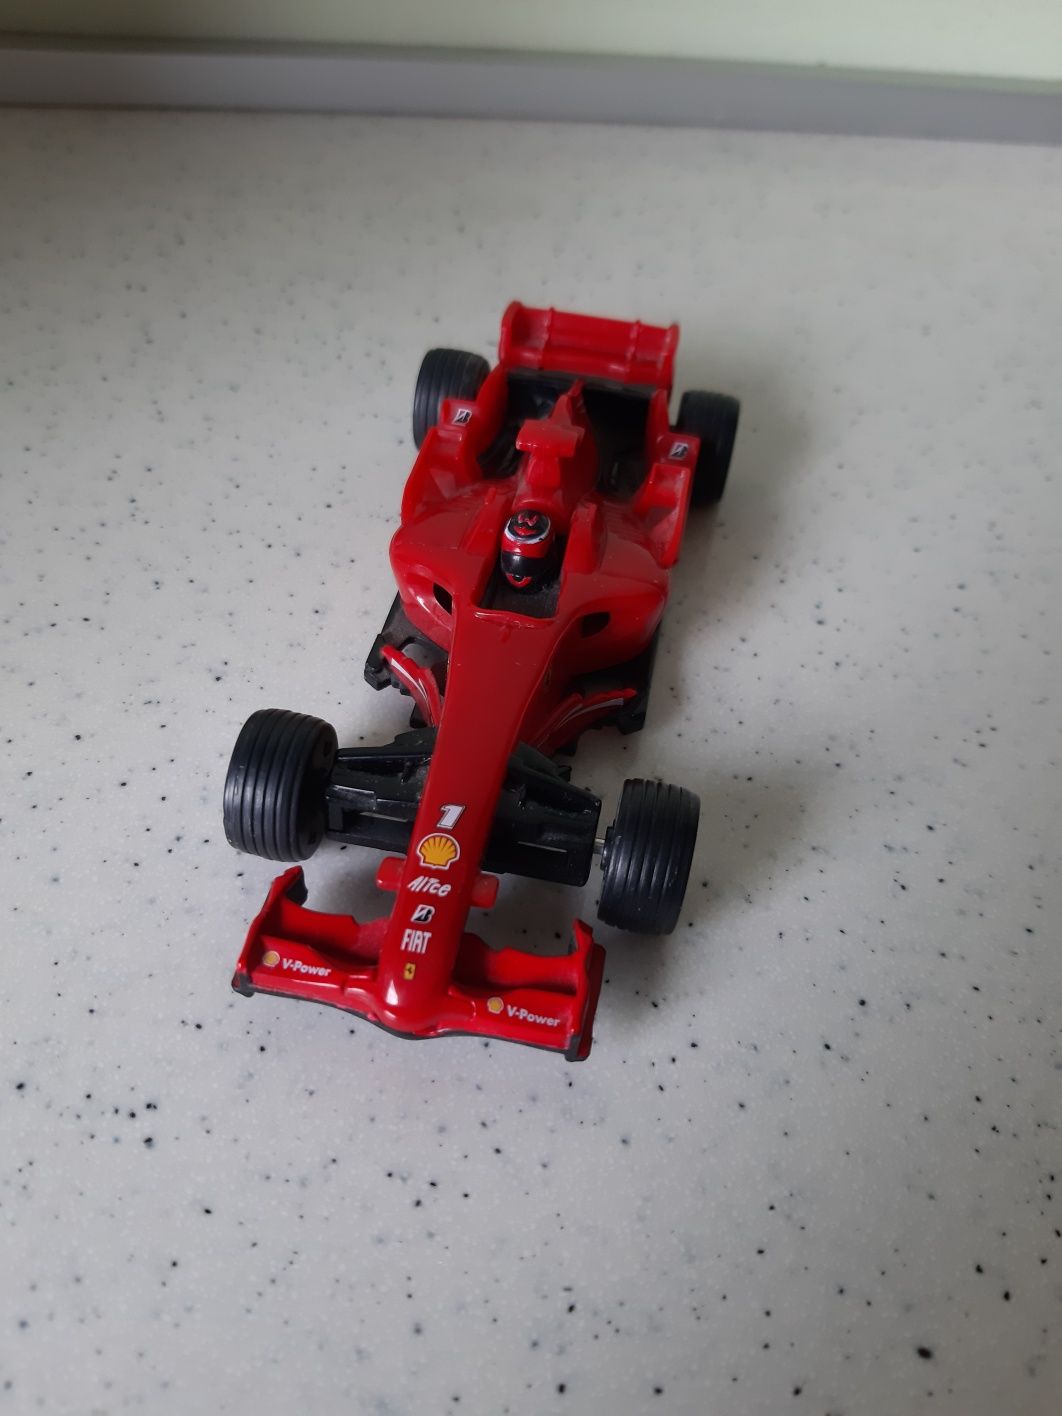 Ferrari F2008 v Power shell wyścigówka autko kolekcja home auto